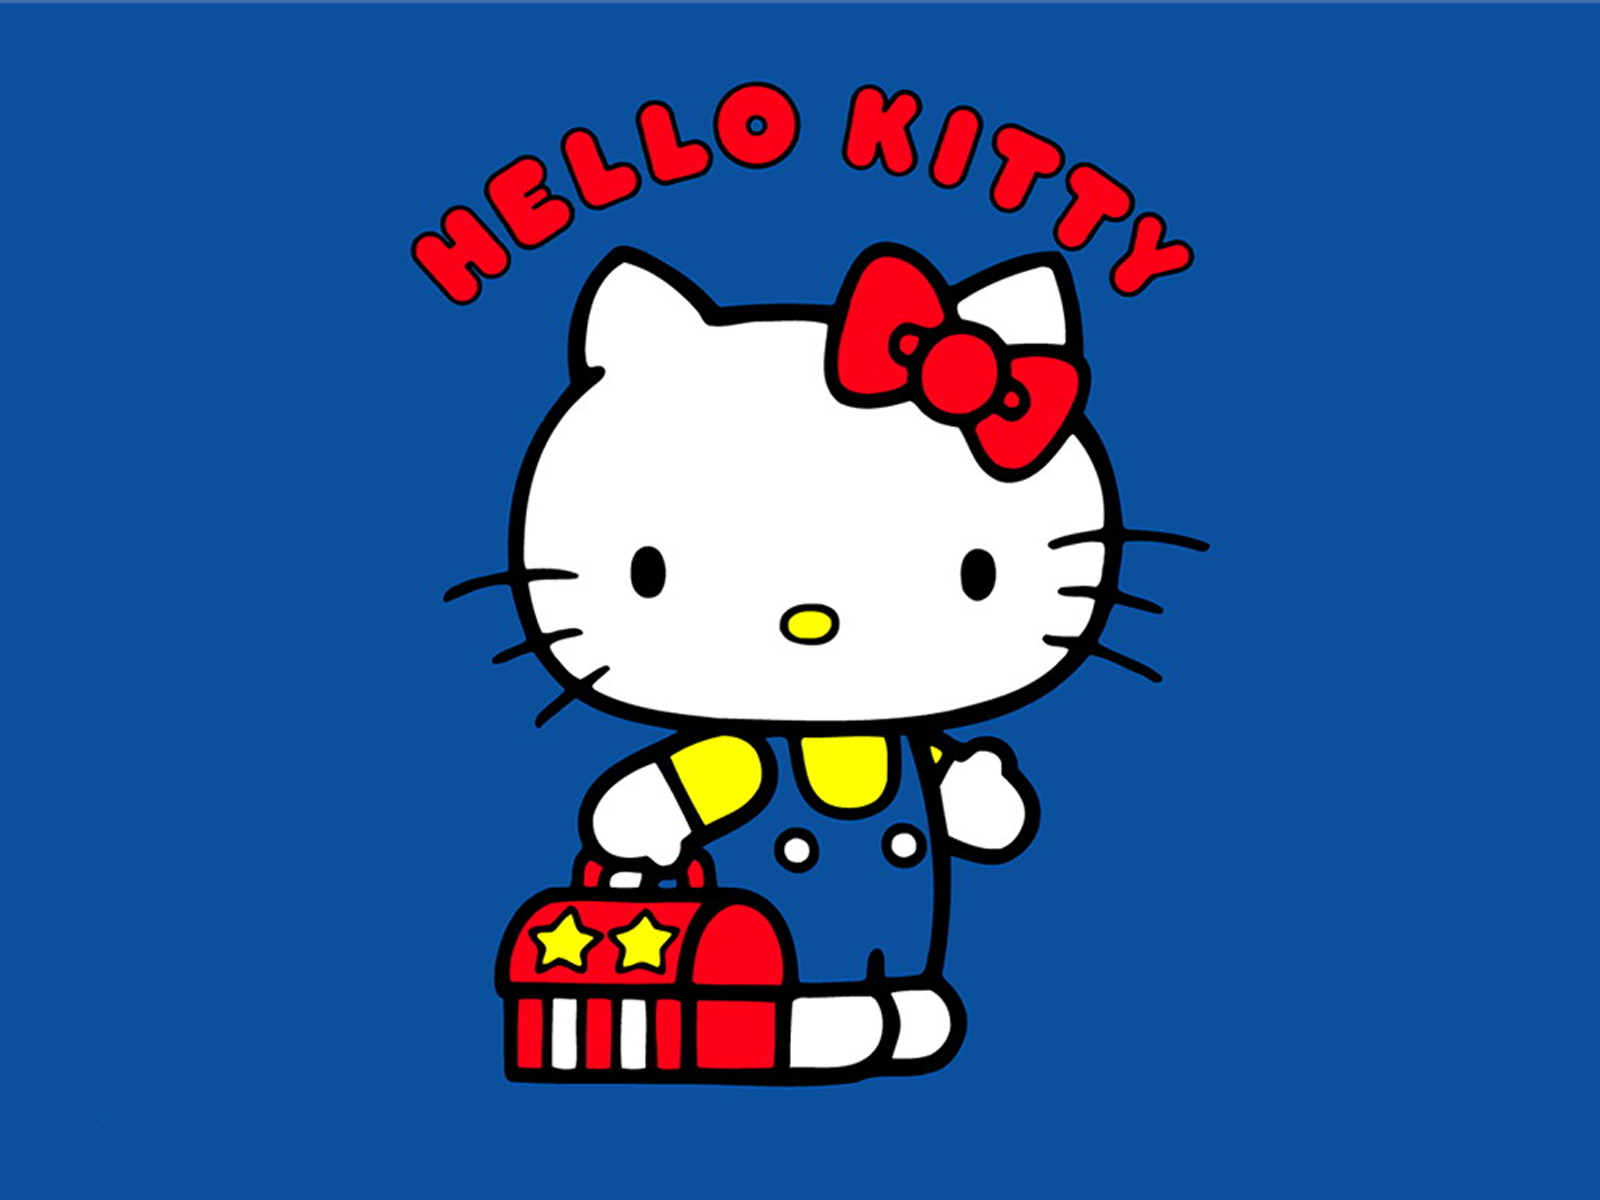 Hình nền Hello Kitty sẽ mang đến cho bạn một màn hình điện thoại đầy phong cách và yêu thích. Với những thiết kế độc đáo và sáng tạo, hình nền Hello Kitty là sự lựa chọn hoàn hảo để dành cho những người yêu thích Hello Kitty.